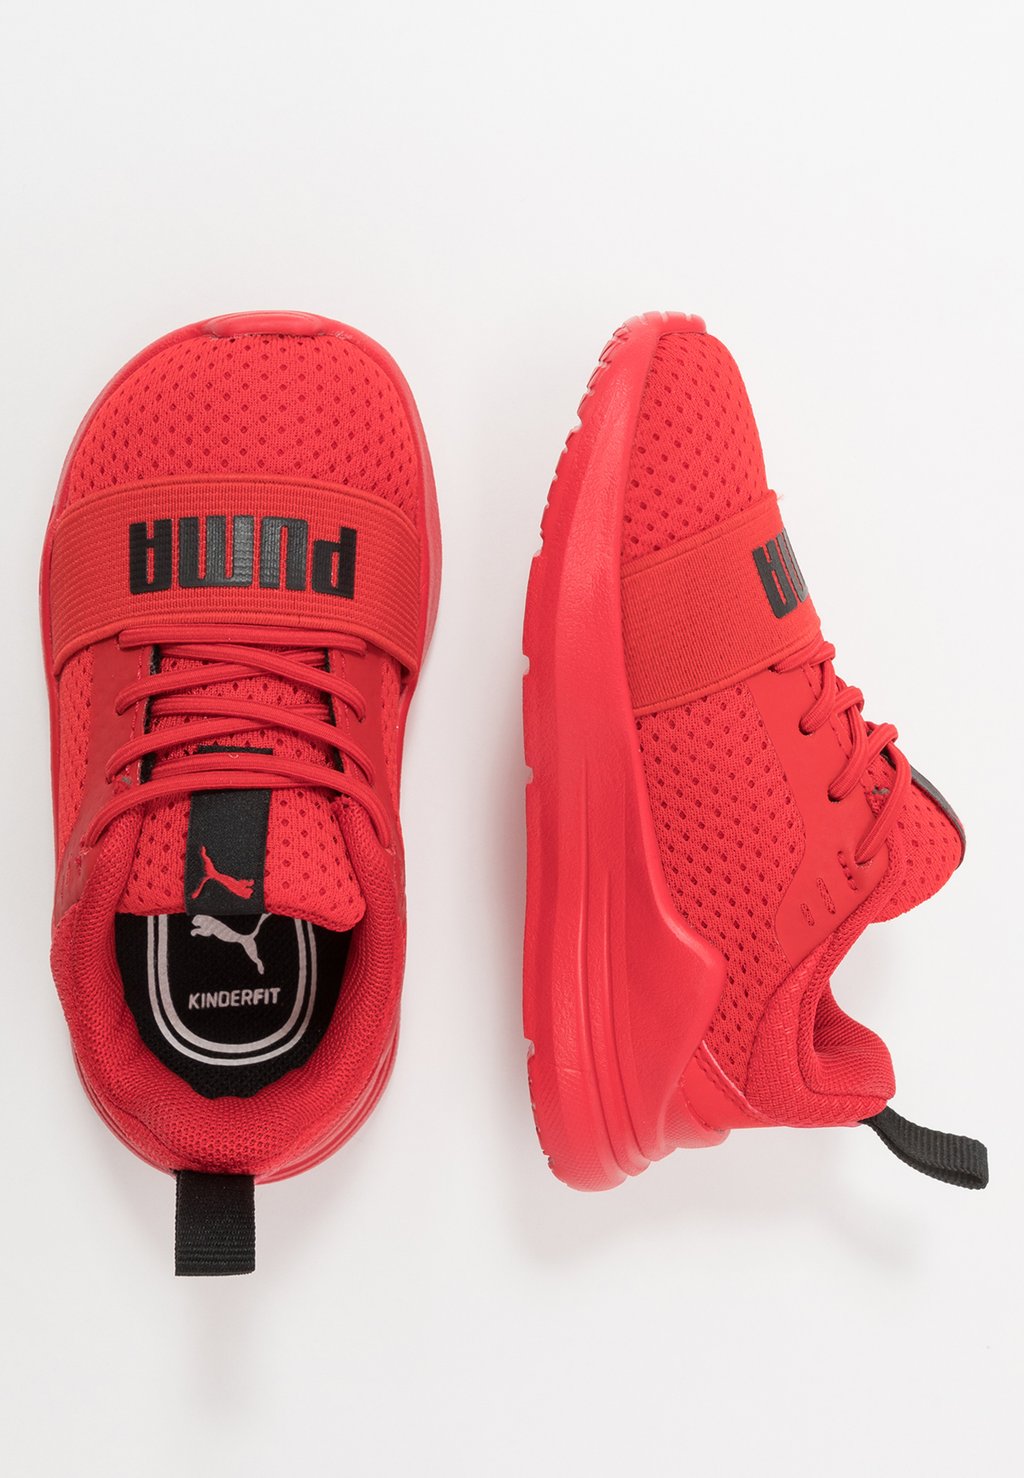 Кроссовки нейтрального цвета Wired Run Unisex Puma, красный